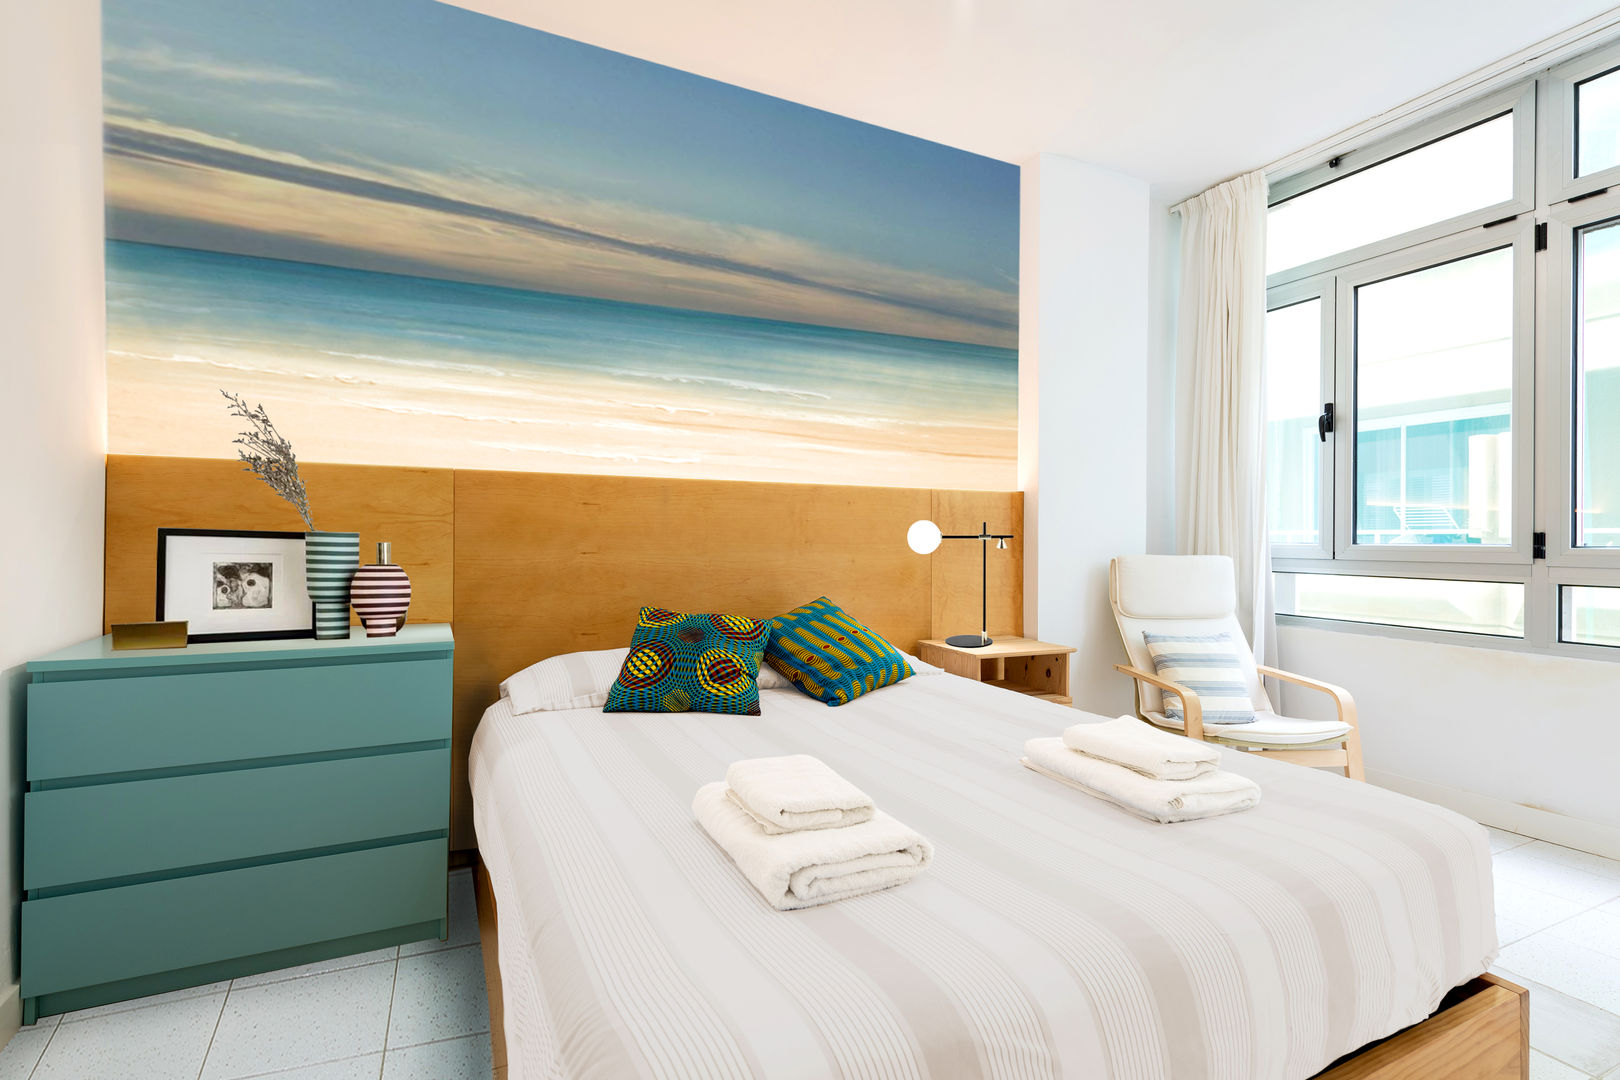 Reforma de vivienda vacacional, Sorimba Beach, SMLXL-design SMLXL-design Phòng ngủ phong cách tối giản